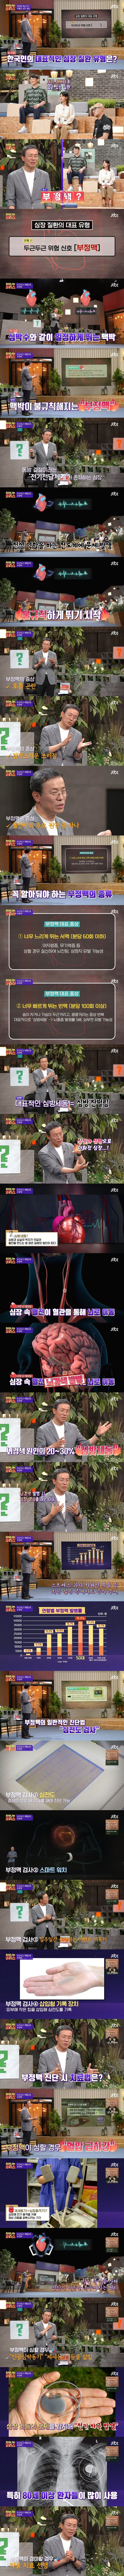 한국인의 대표적인 심장질환